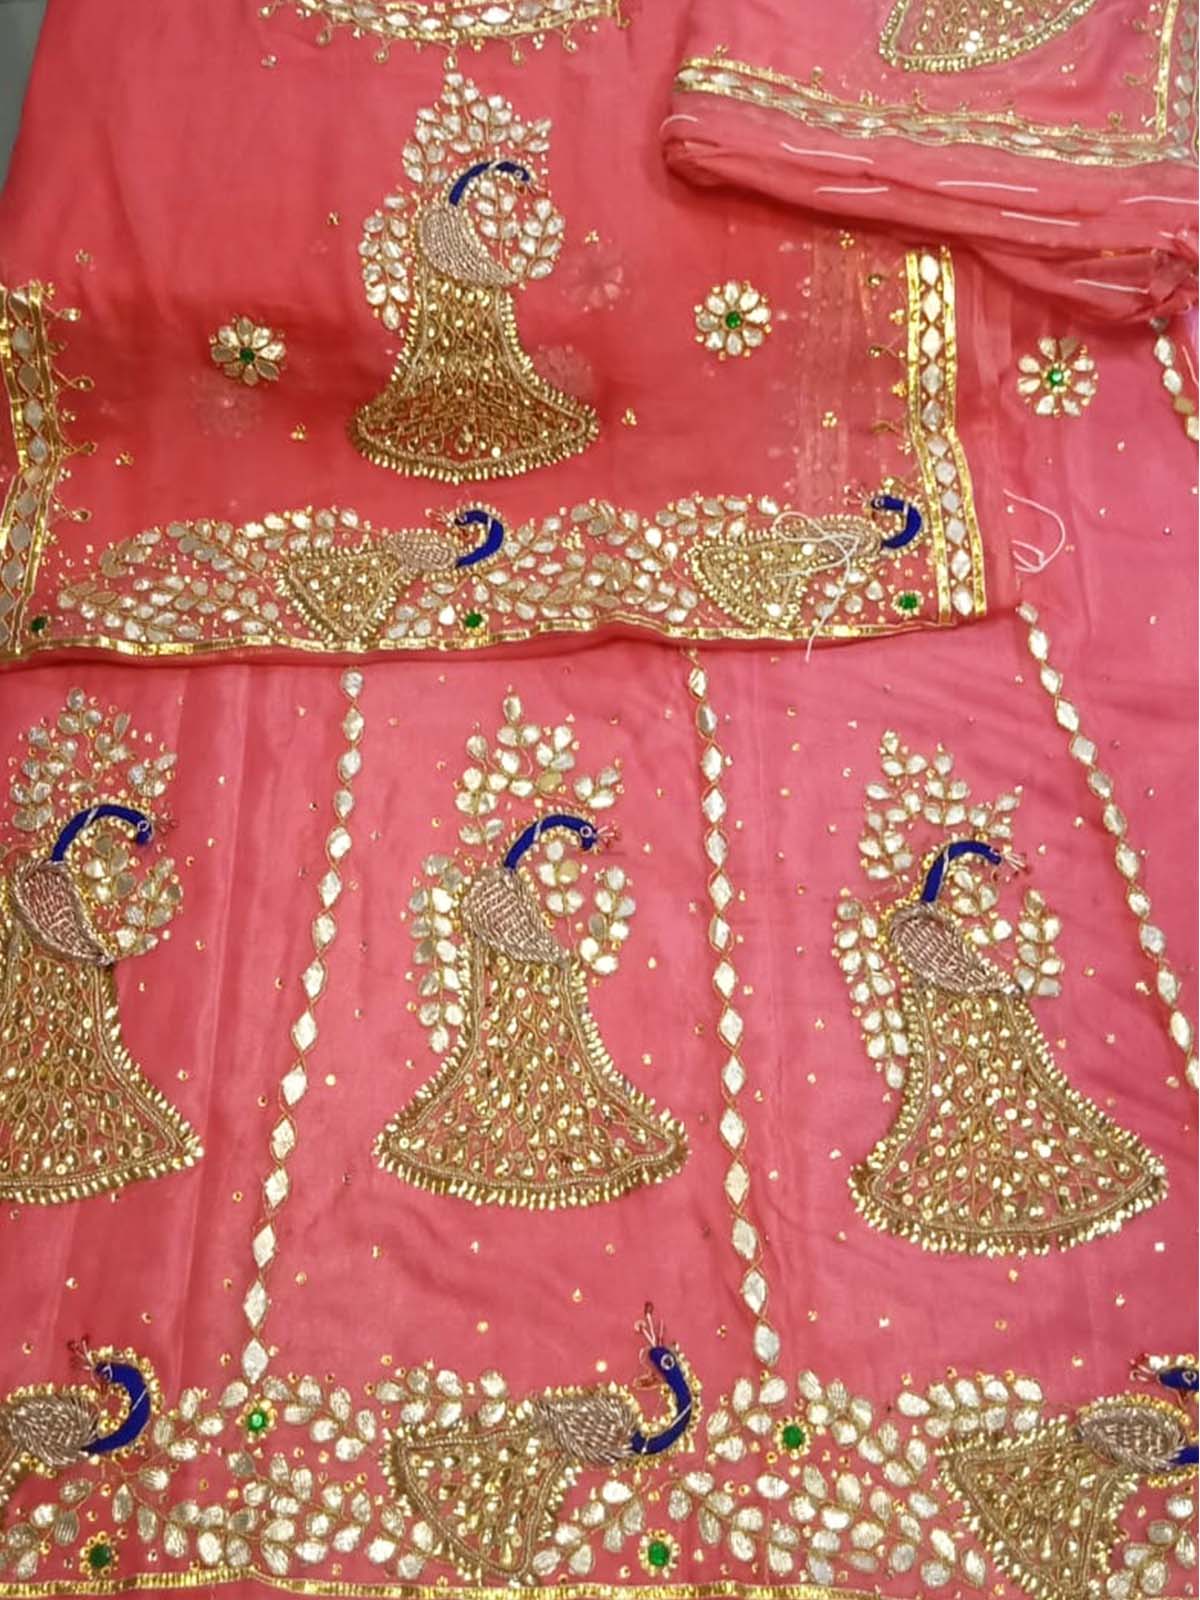 Free Stiching Traditional Rajputi Poshak, Rajasthani Lehenga Choli, Wedding  Dress Outfit, Chaniya Choli for Women, Rajputi Lehenga Choli - Etsy |  Rajasthani dress, Rajputi dress, Rajasthani lehenga